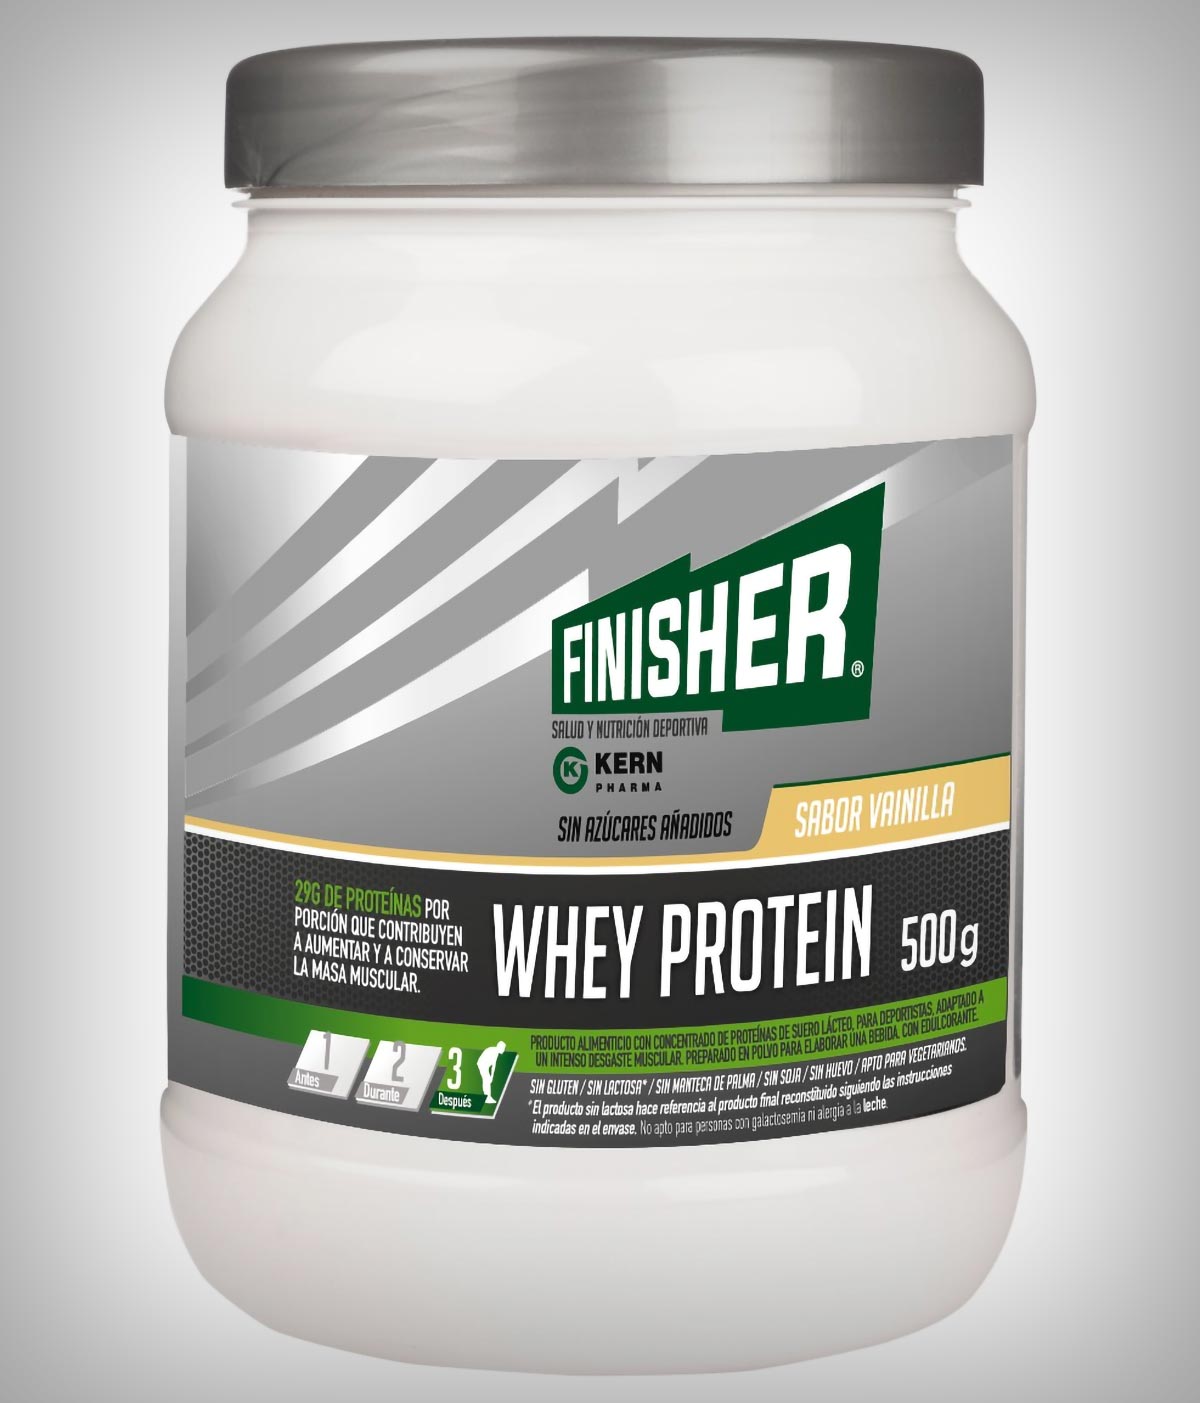 Kern Pharma amplía su línea de productos Finisher con el lanzamiento de la Whey Protein de sabor vainilla